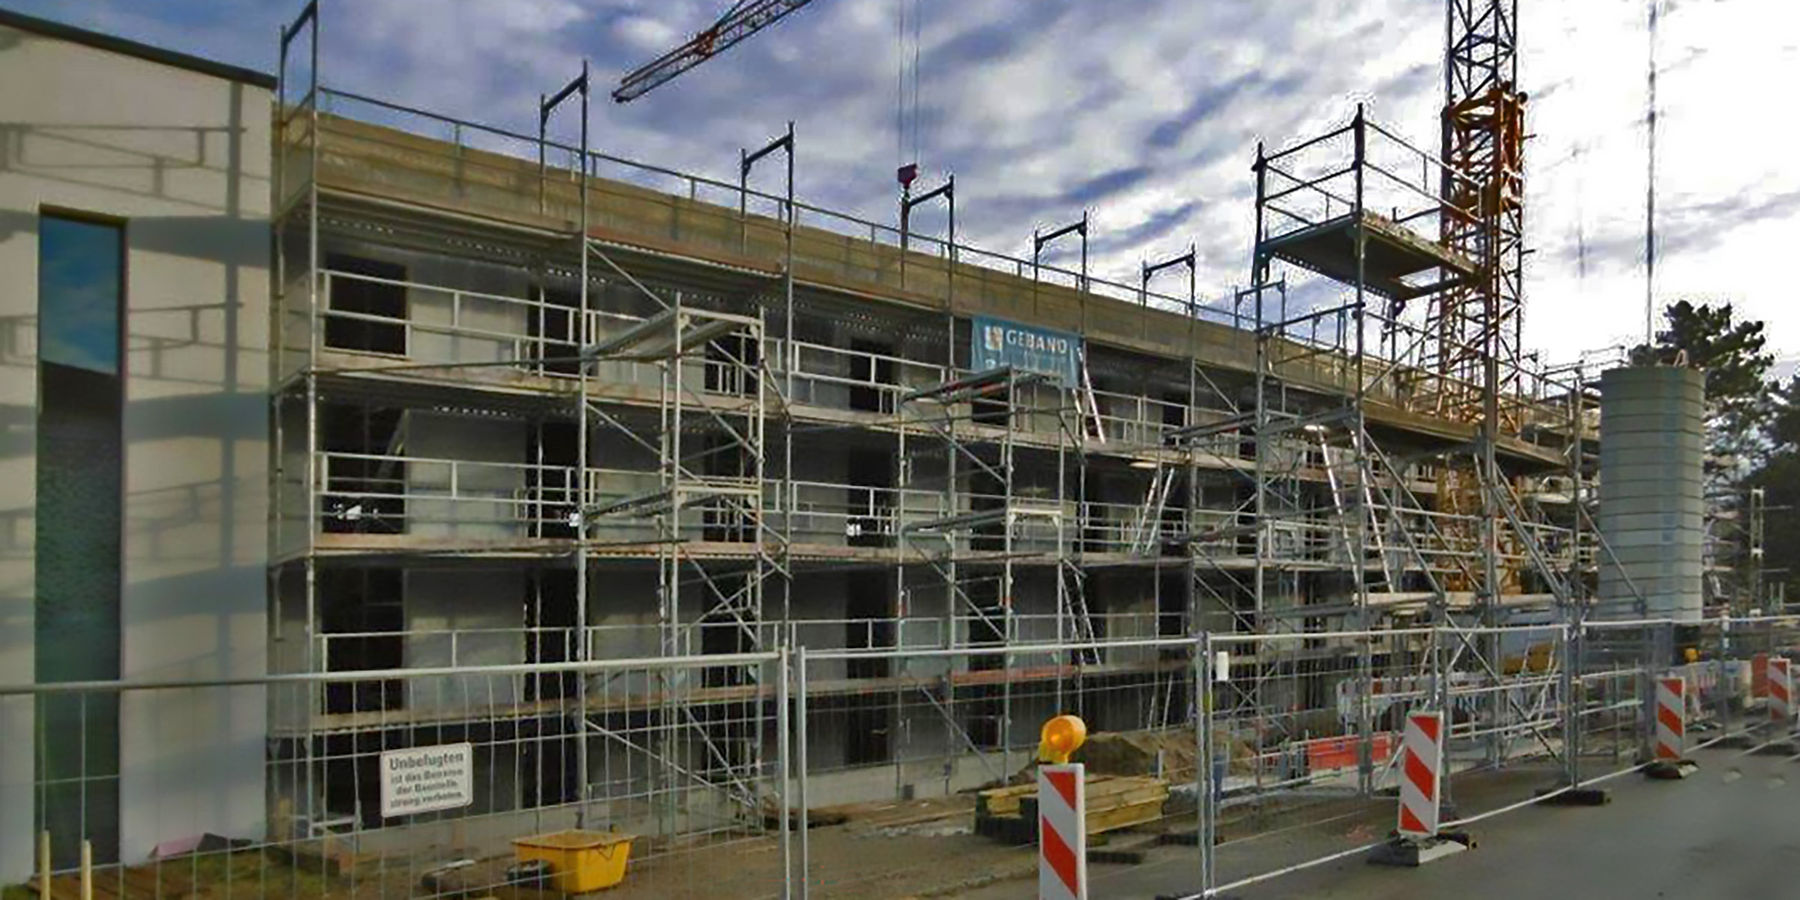 Für 6,1 Millionen Euro entsteht der Bauteil II der Forschungshalle an der Universität Rostock. © 2019 Heike Wehrle, Staatliches Bau- und Liegenschaftsamt Rostock